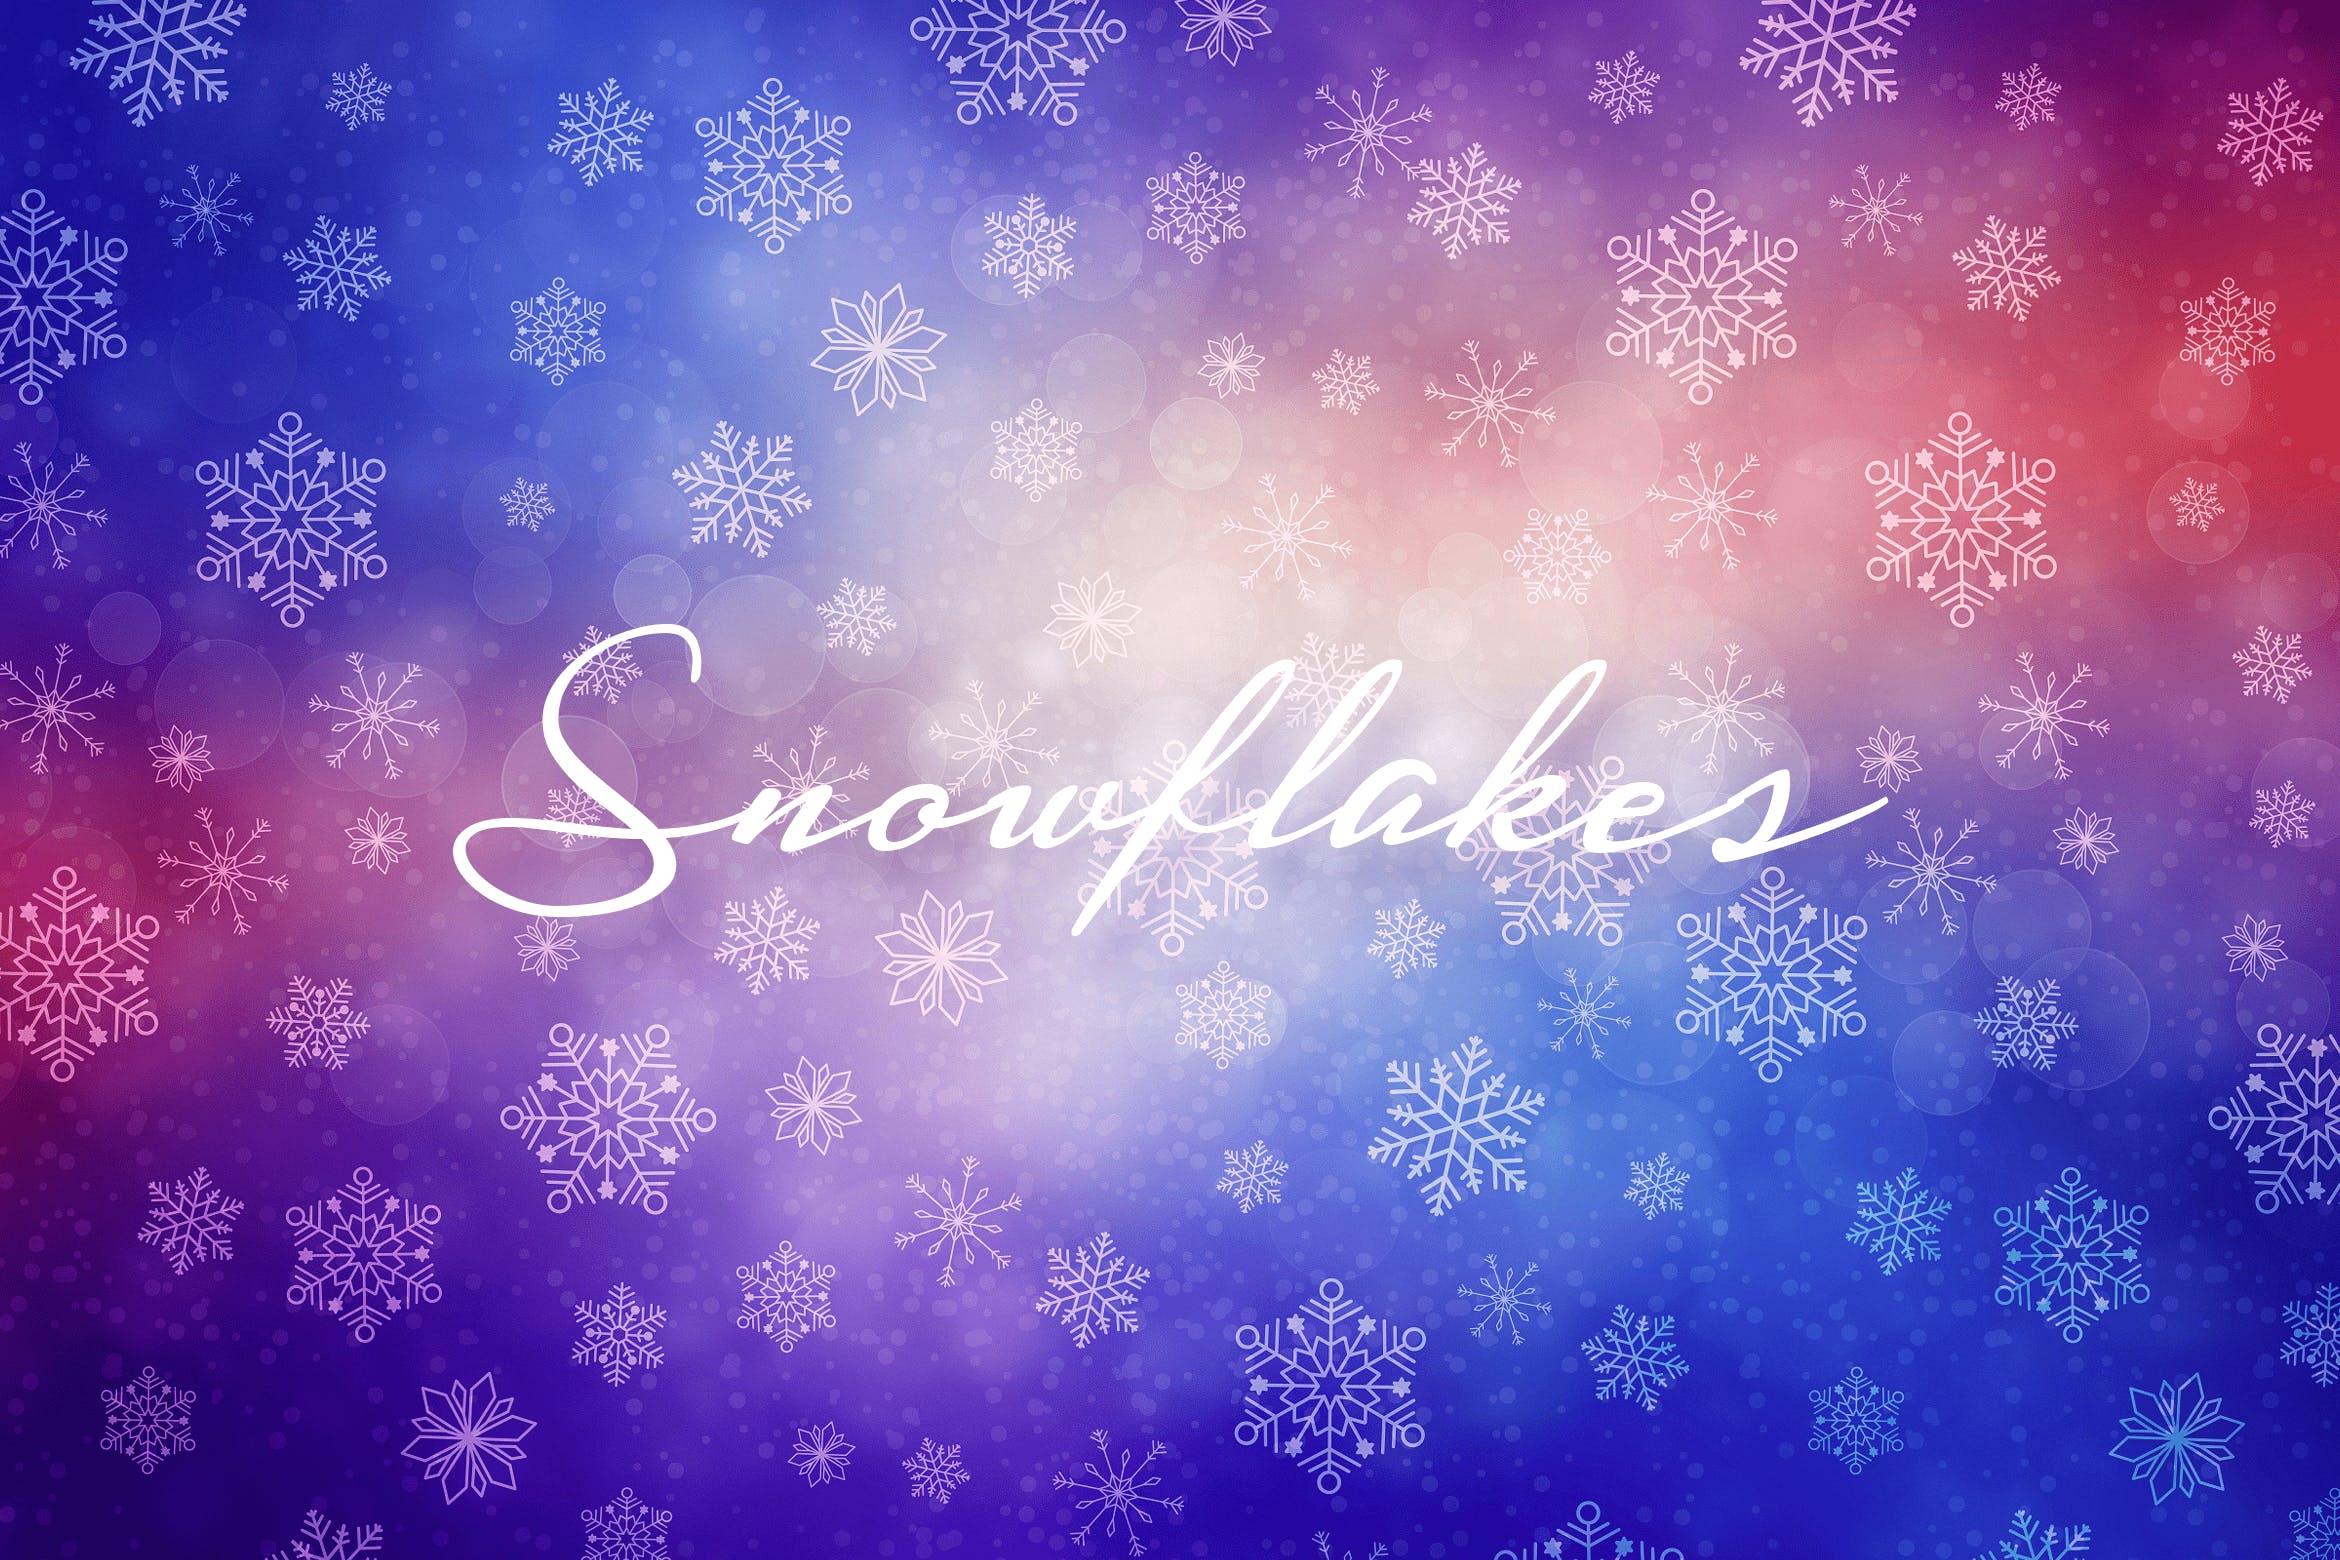 冬季雪花图案高清背景图素材 Winter Snowflakes Backgrounds插图